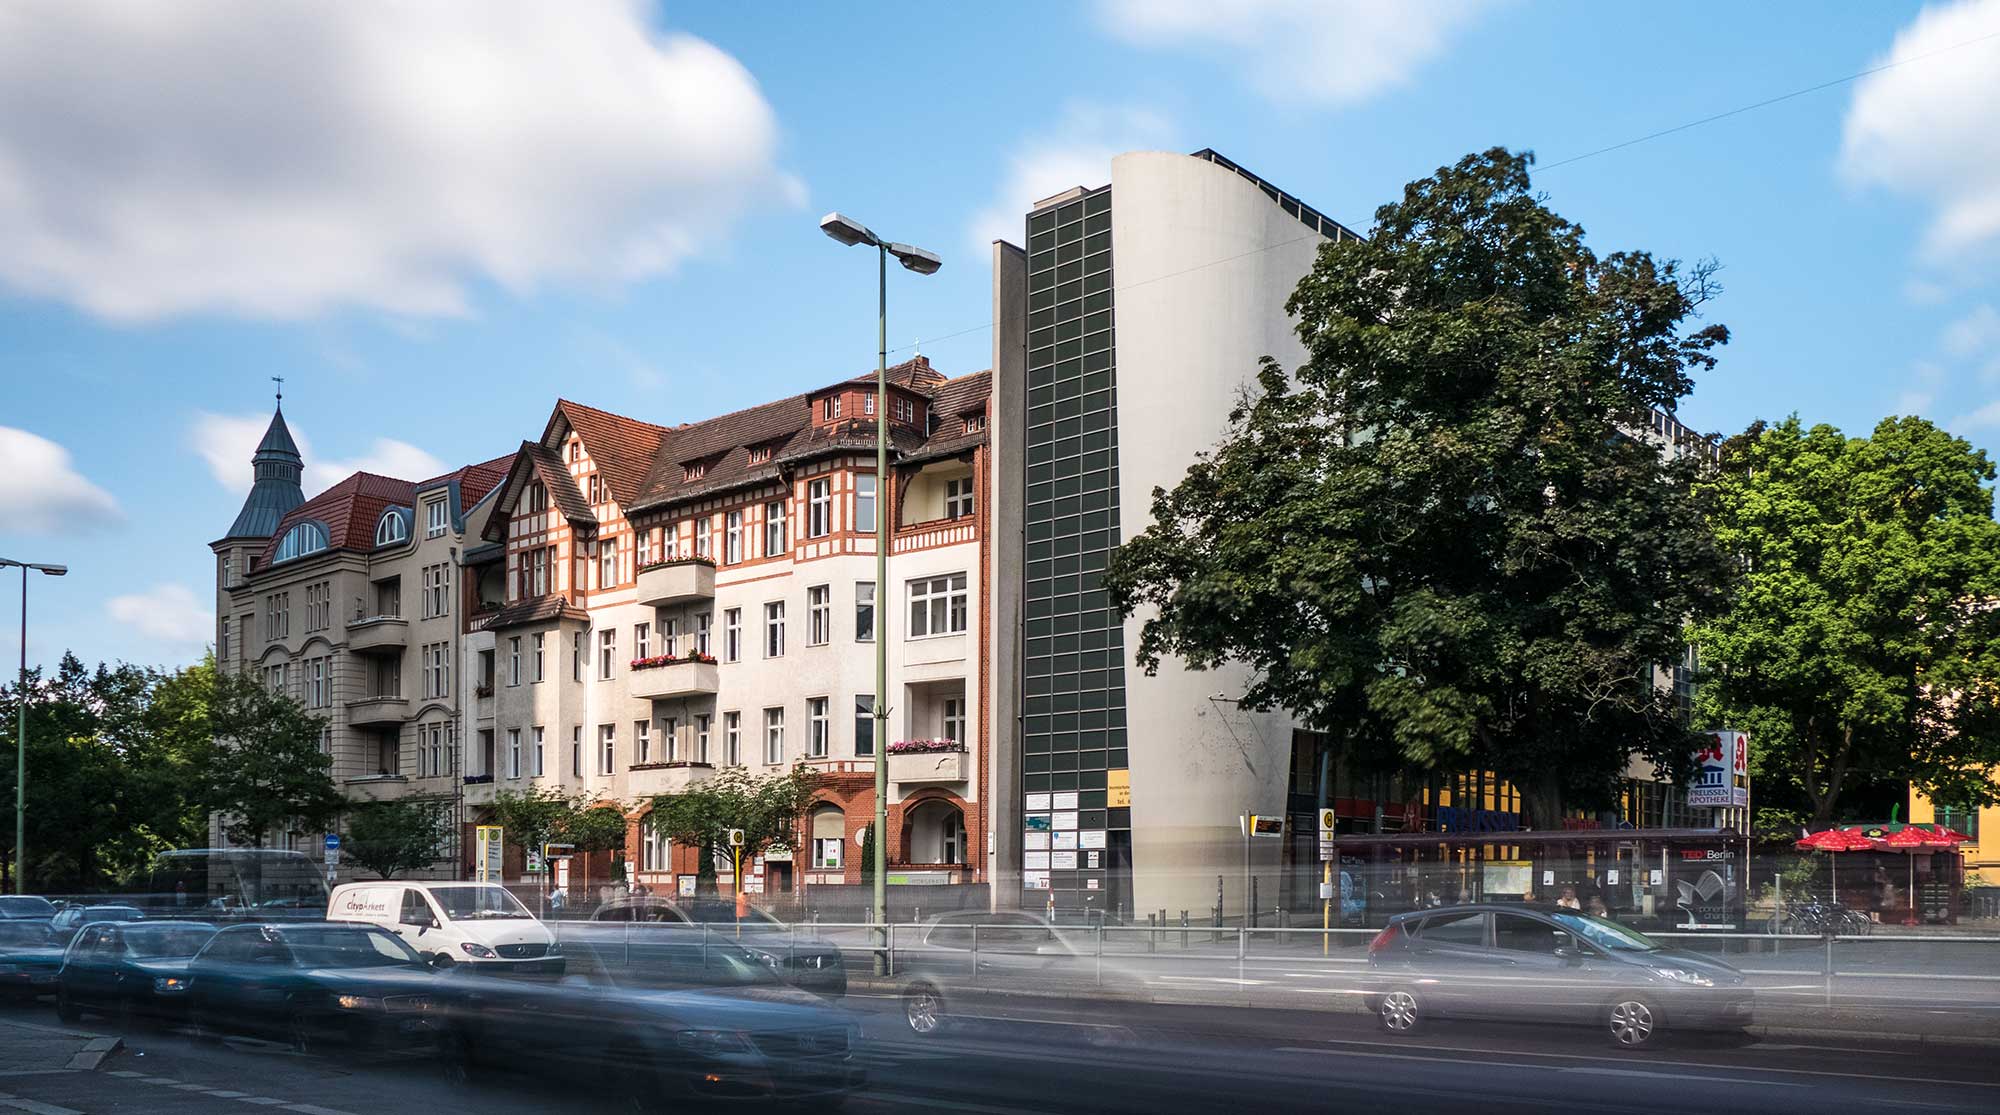 Ärztehaus Schloßstraße ein Projekt der HGHI Holding GmbH